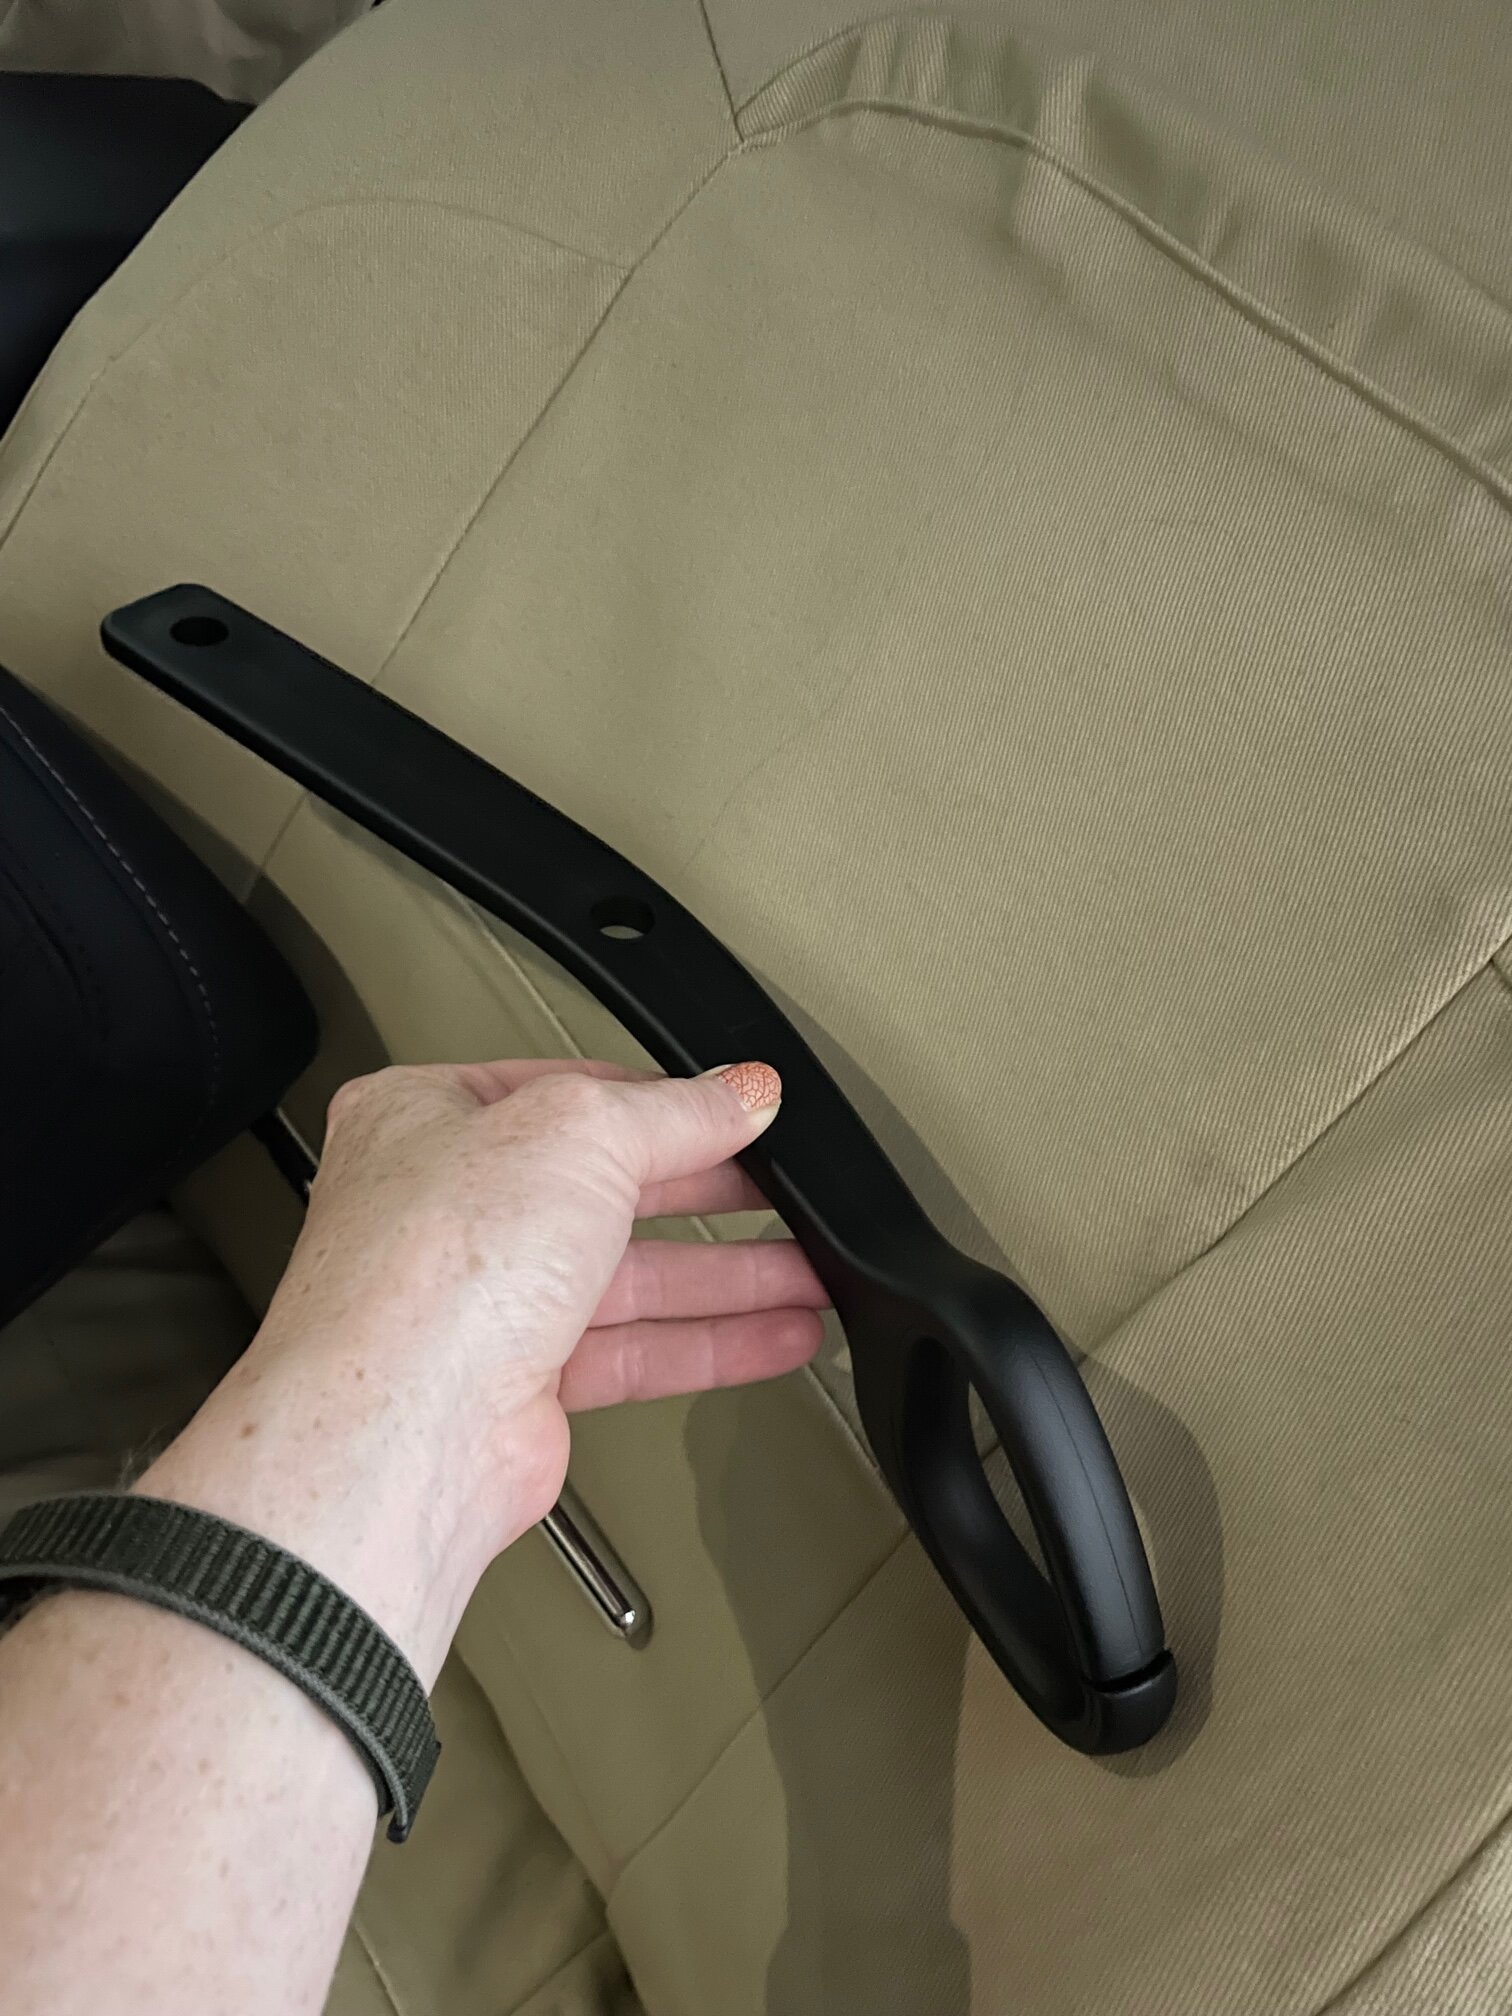 Adjustable Seat Belt Extender / Extension for 2015 - 2022 Ford